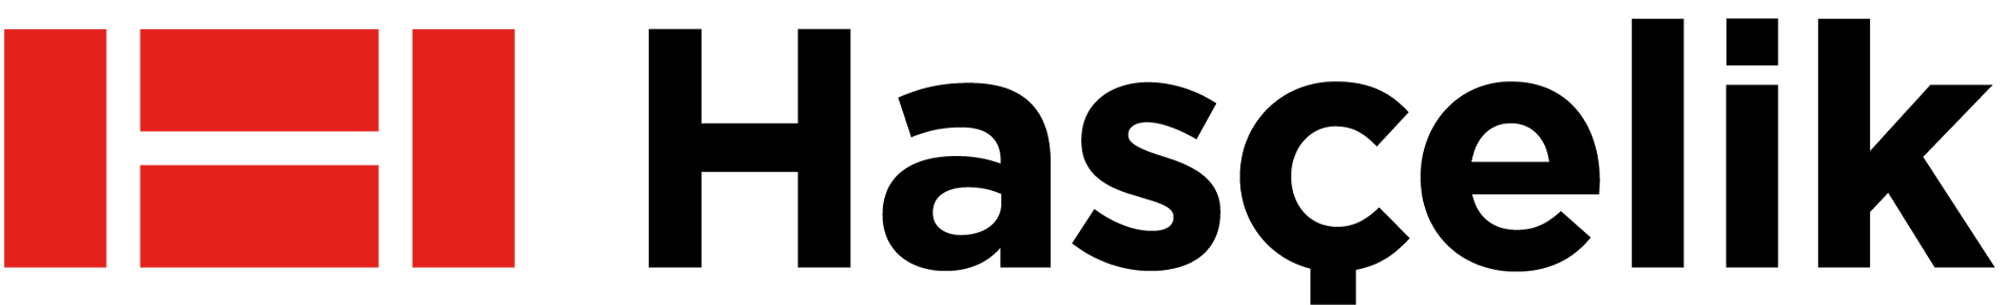 hasçelik logo